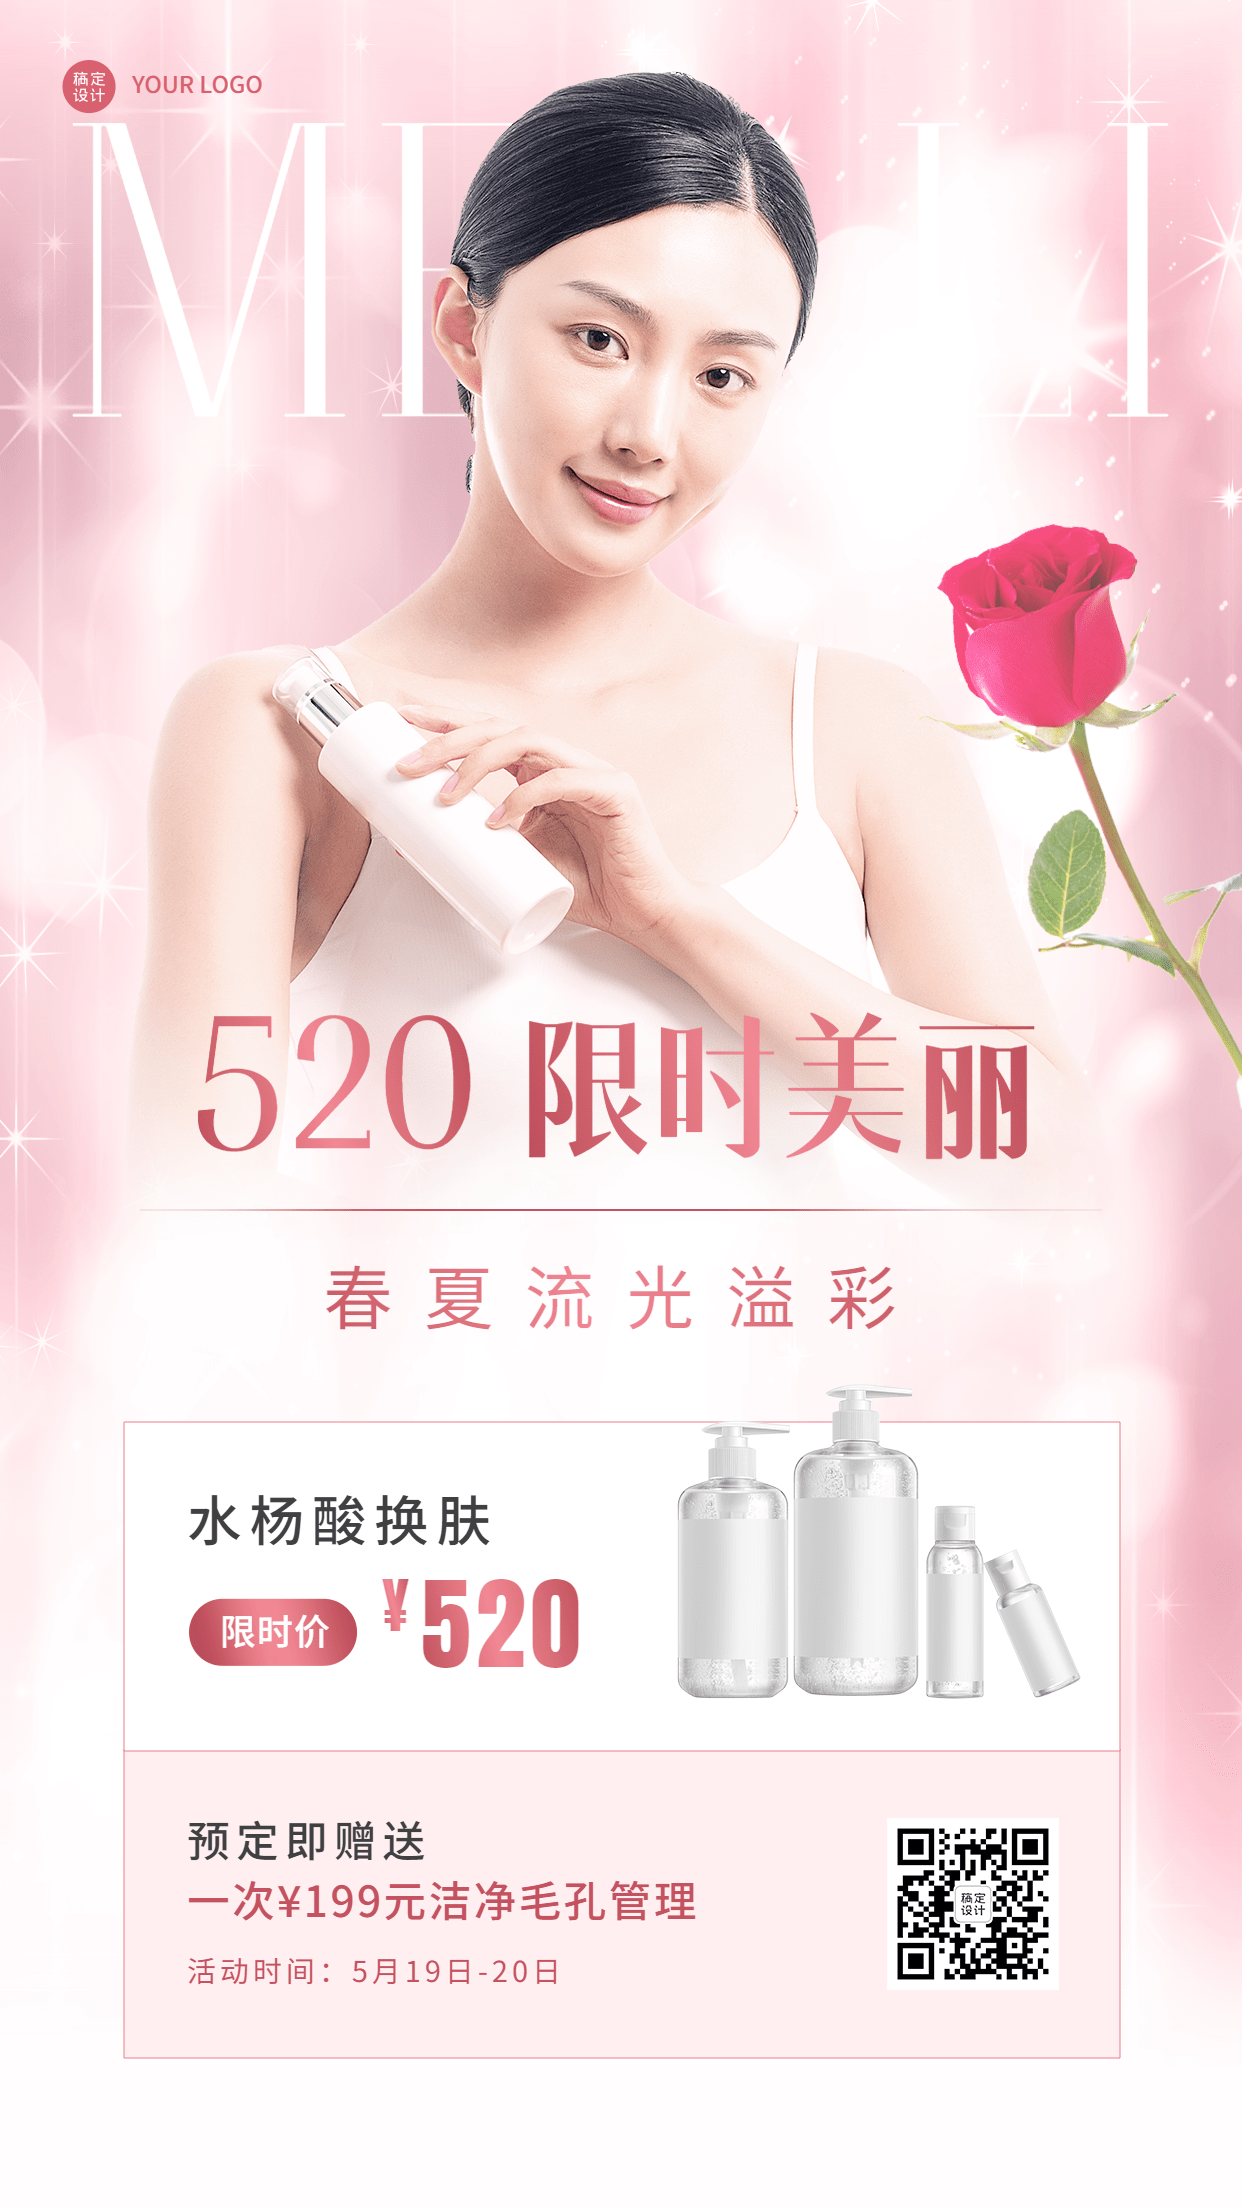 微商520情人节美业美容服务产品营销宣传手机海报预览效果